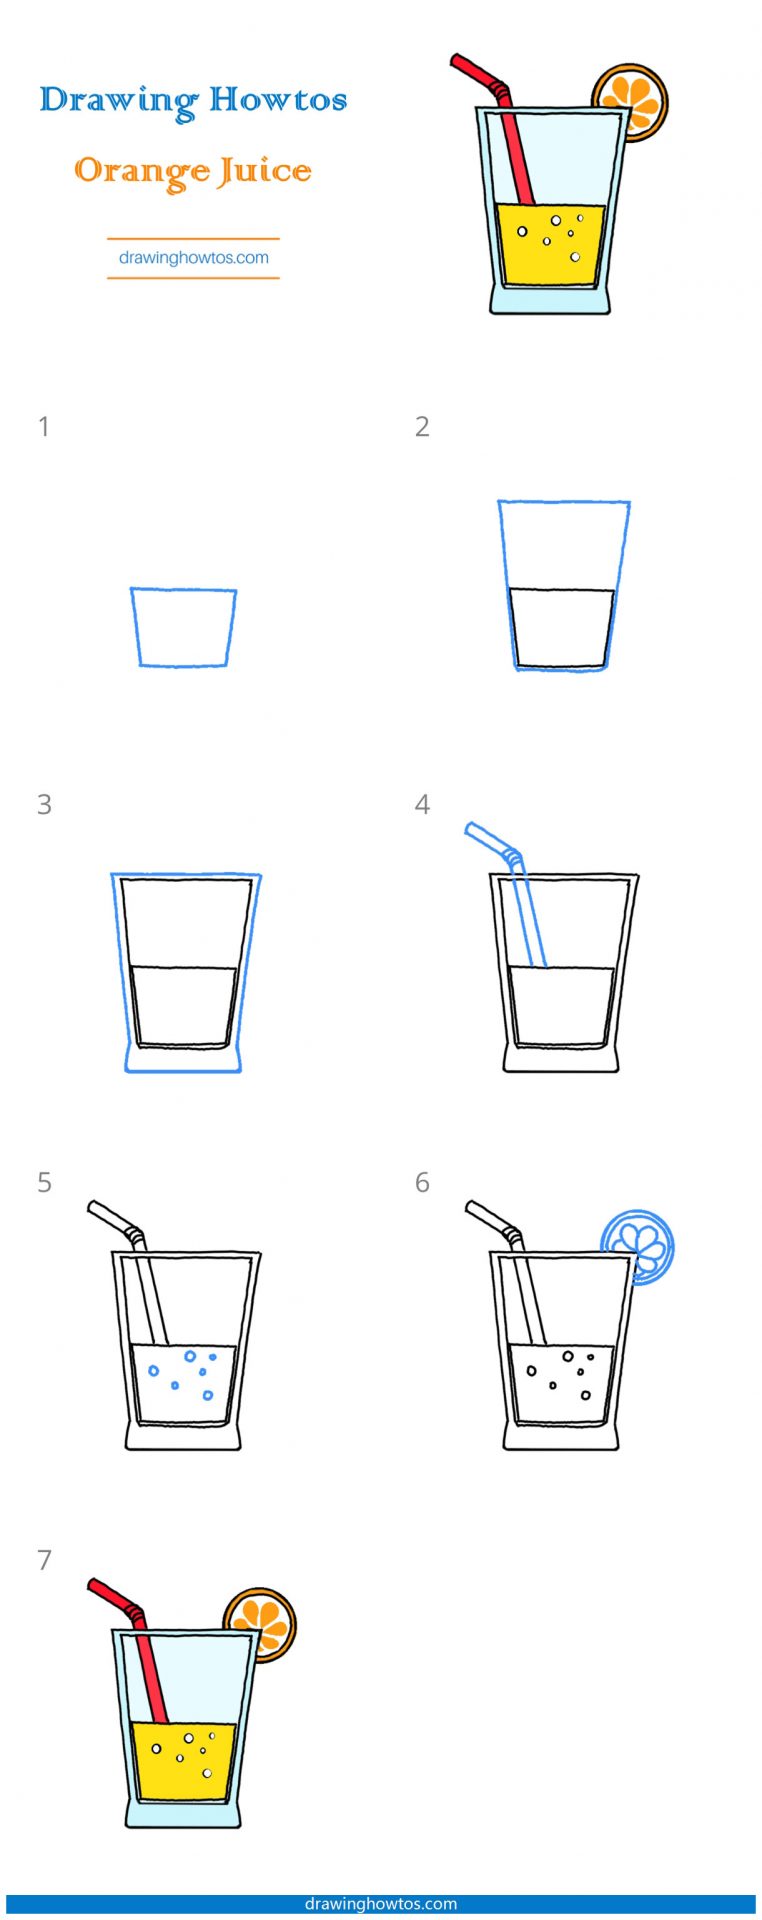 How to Draw Orange Juice Step by Step